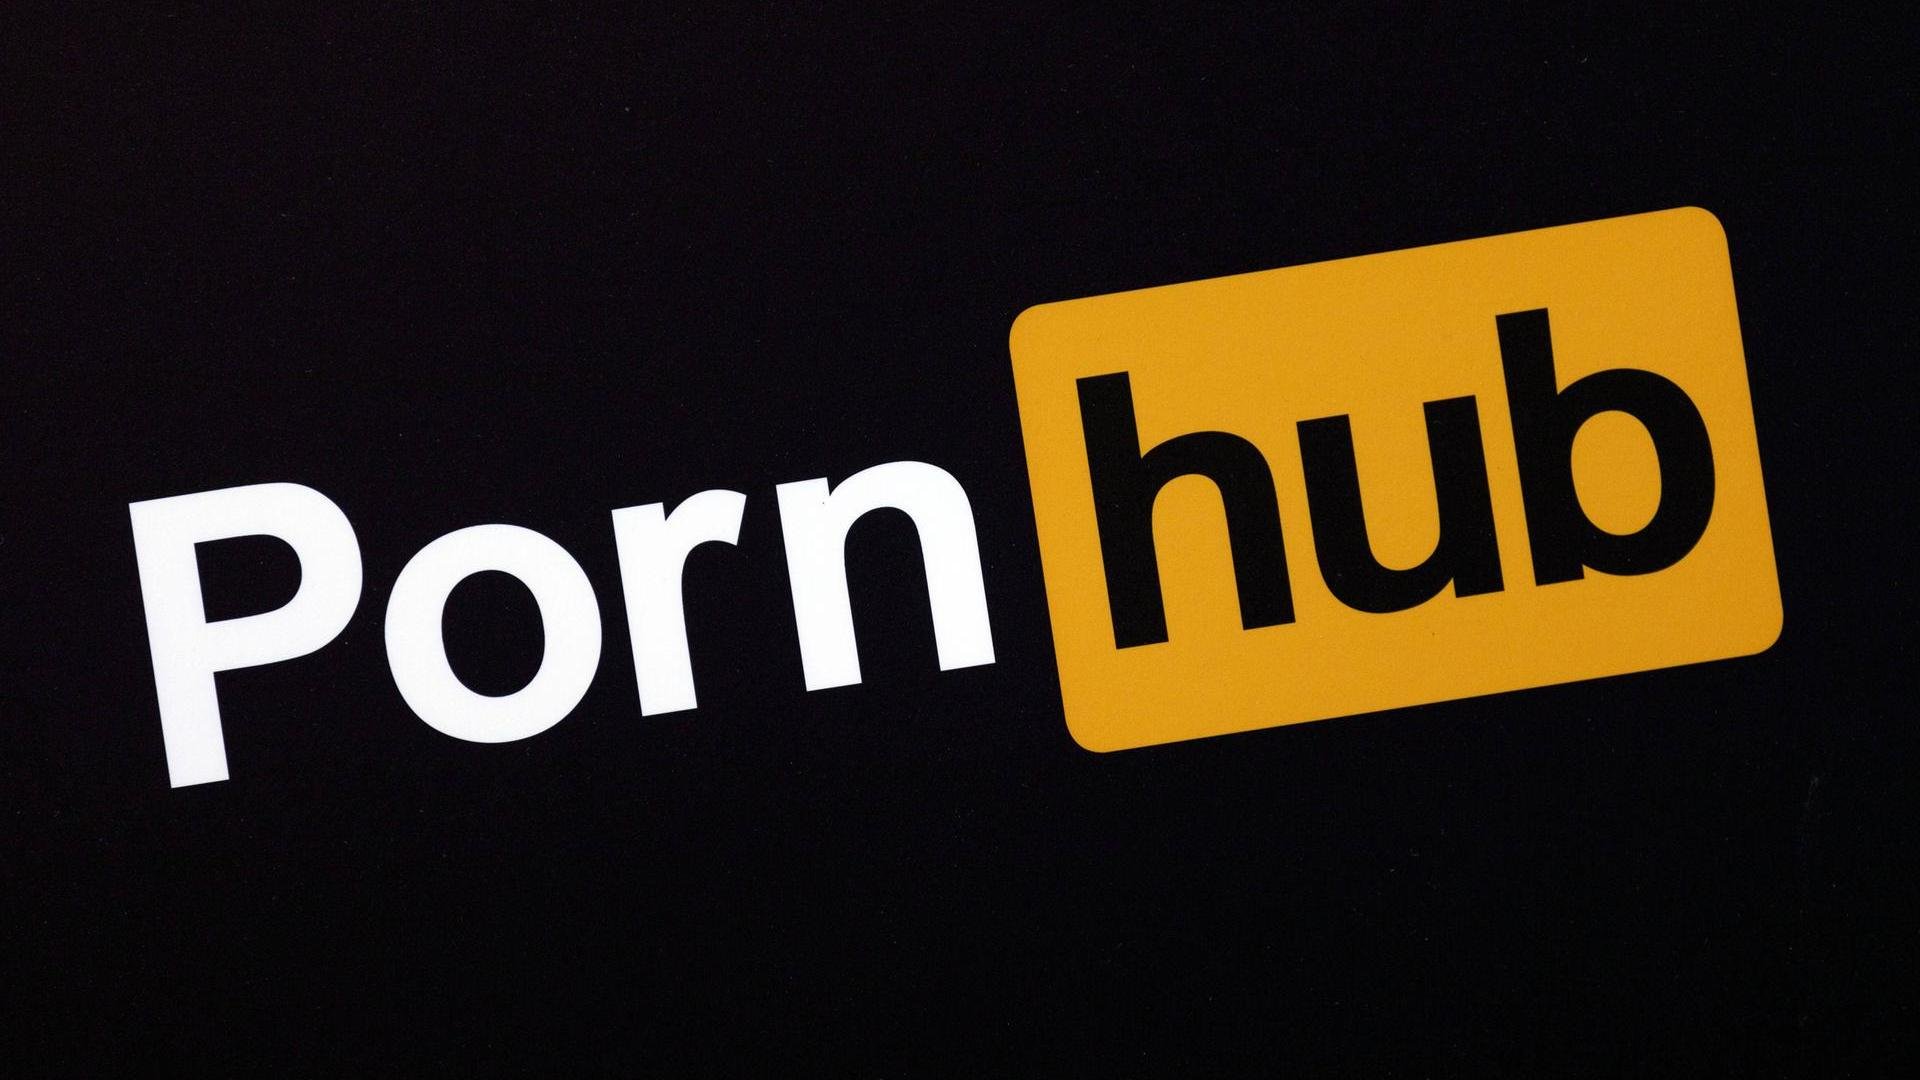 Логотип порнохаба